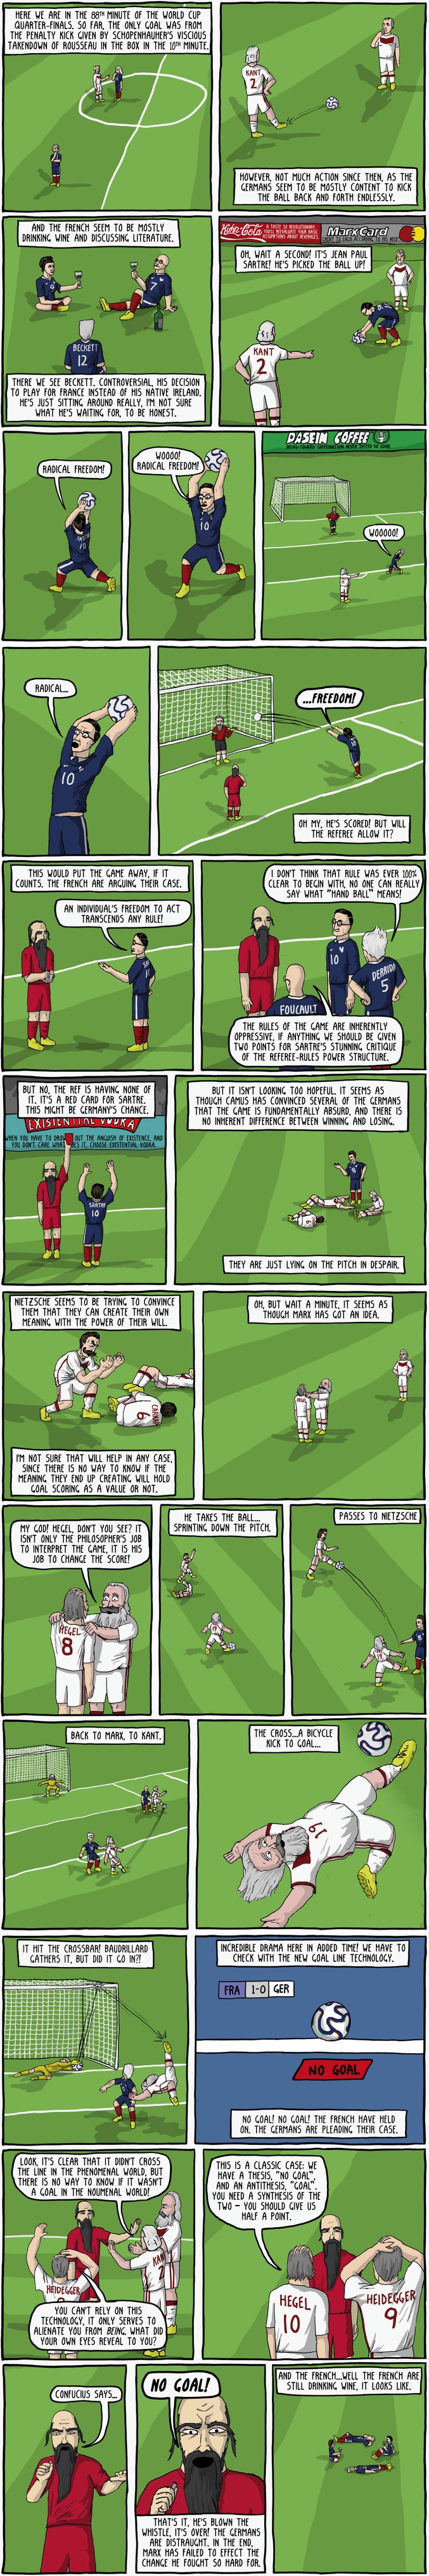 Et si un match de foot de la Coupe du Monde réunissait des philosophes...
(Bande-dessinée de Existantial Comics)